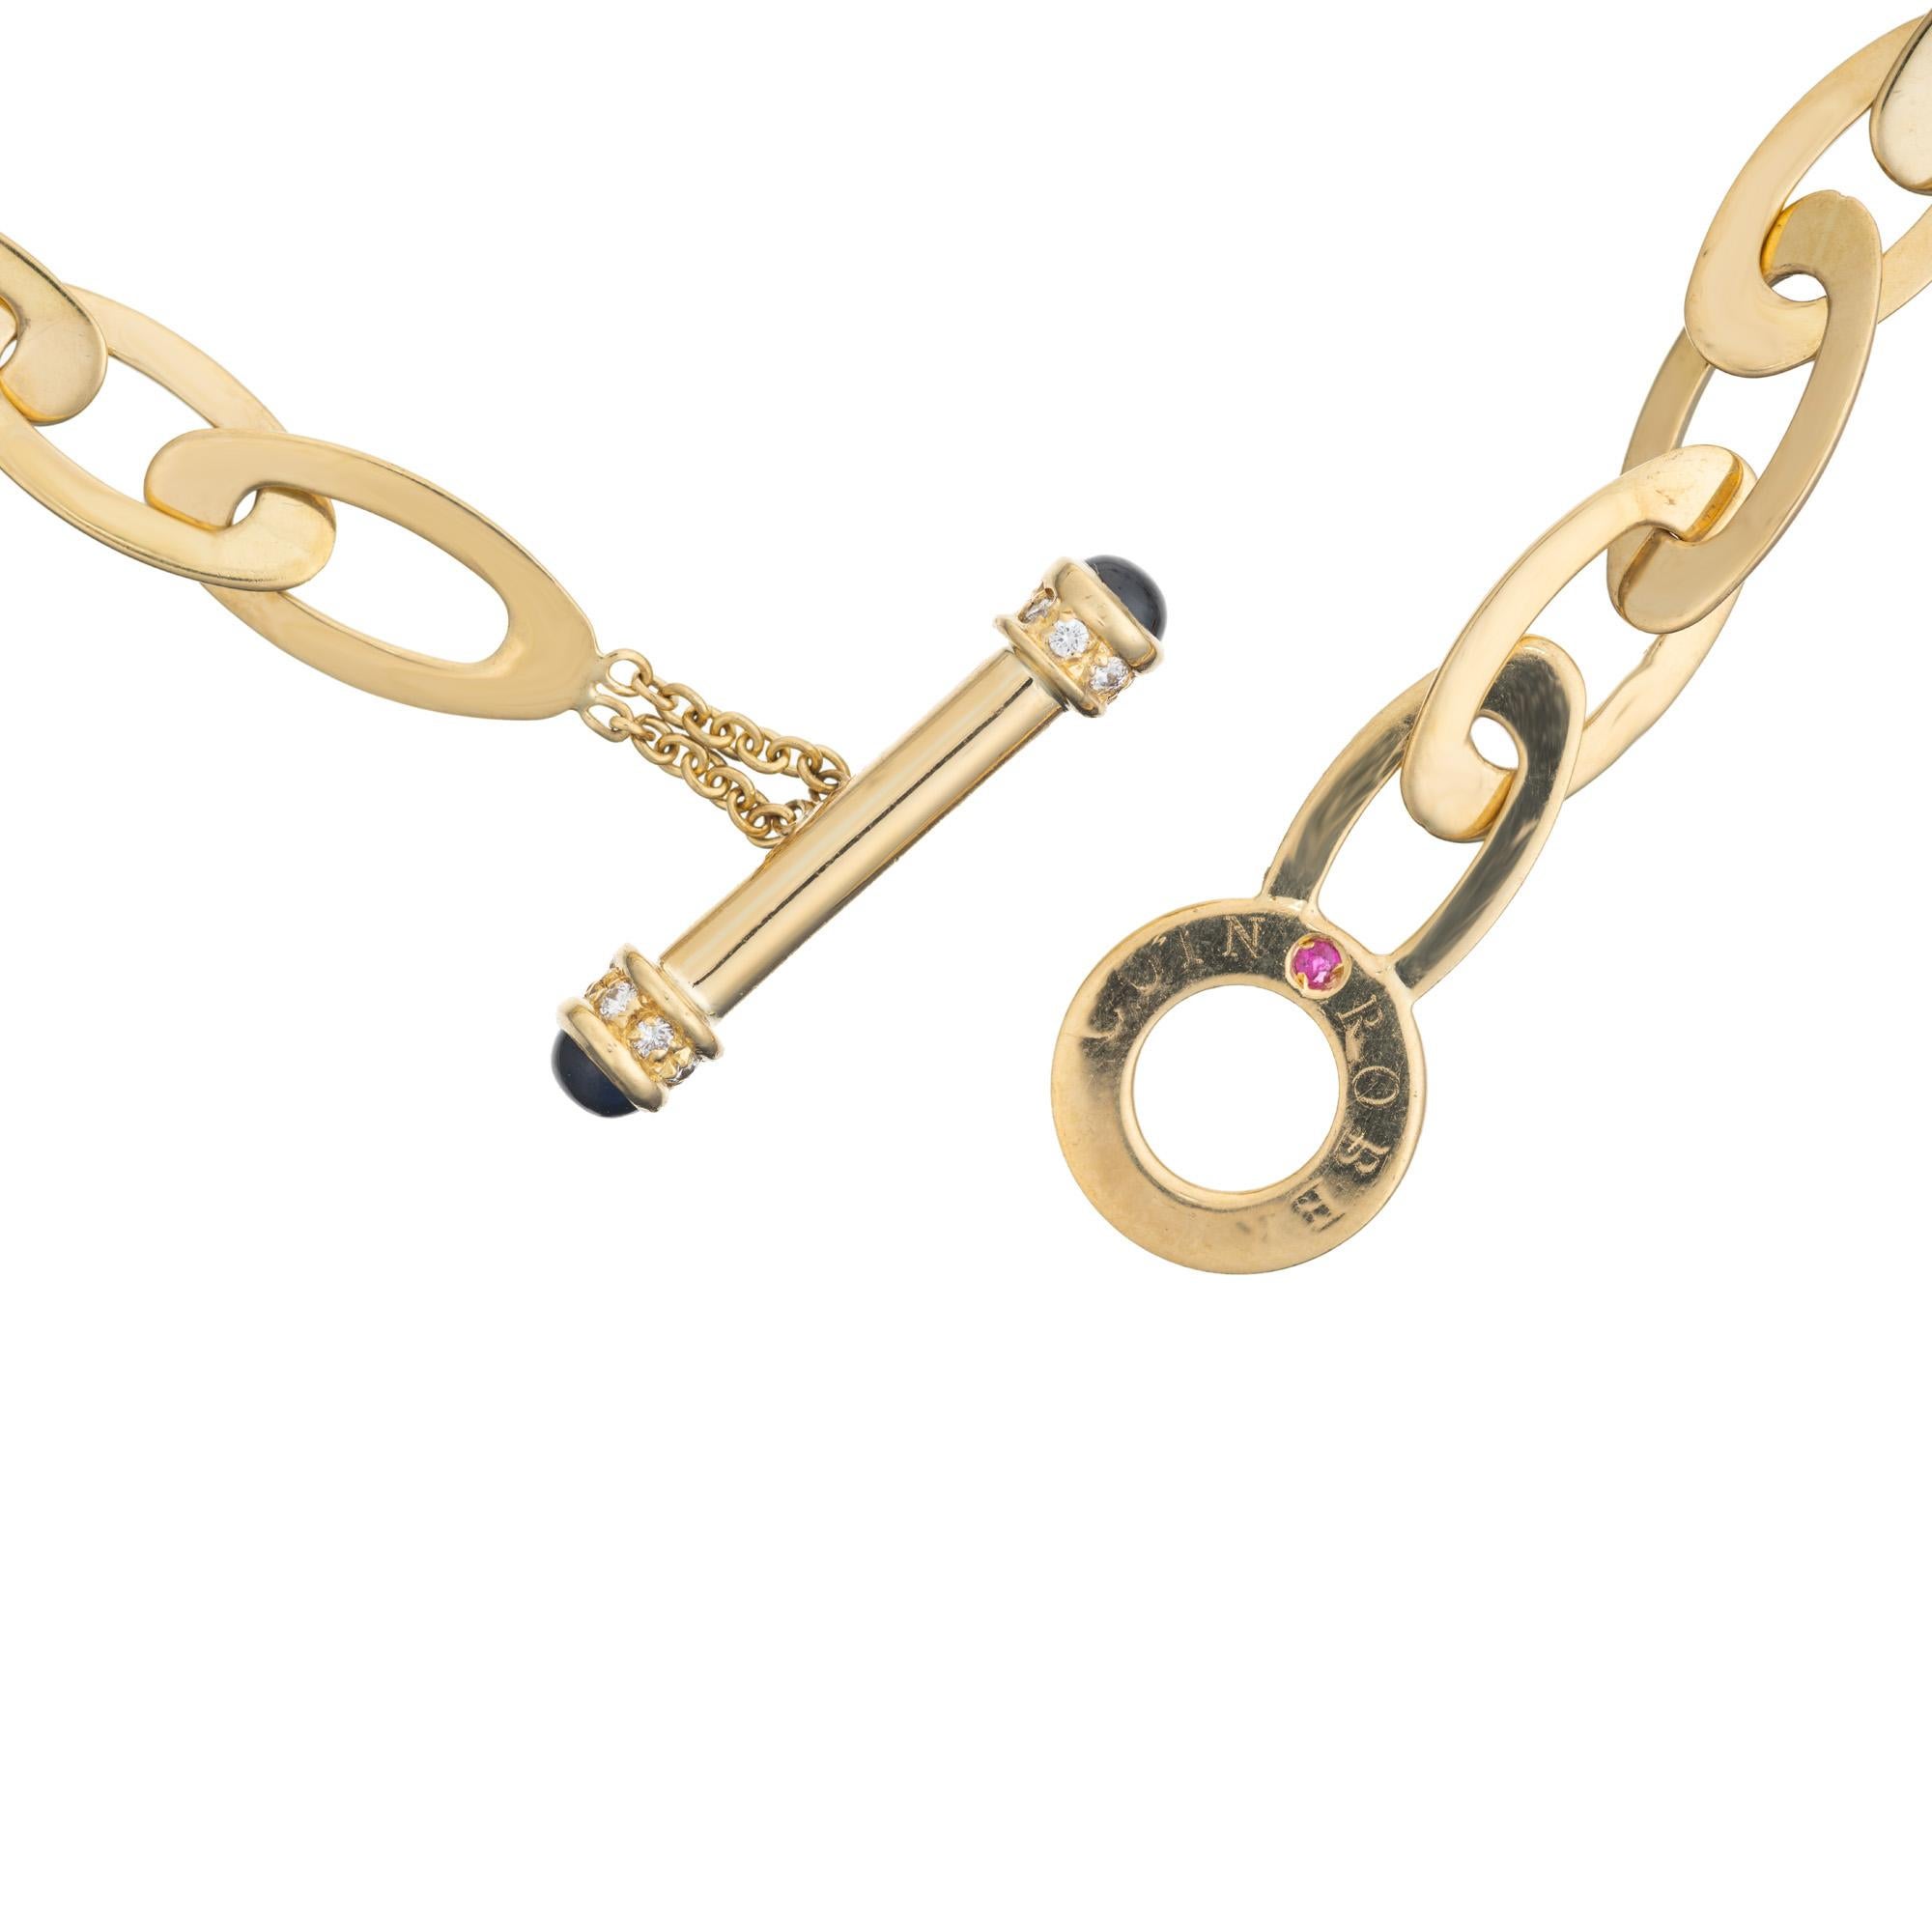 Collier chic à maillons ovales en or. Ce collier à maillons Roberto Coin a une longueur totale de 32 pouces, ce qui permet de le porter à cette longueur ou en multi-chaînes. Les maillons ovales allongés en or jaune 18 carats, très polis, alternent